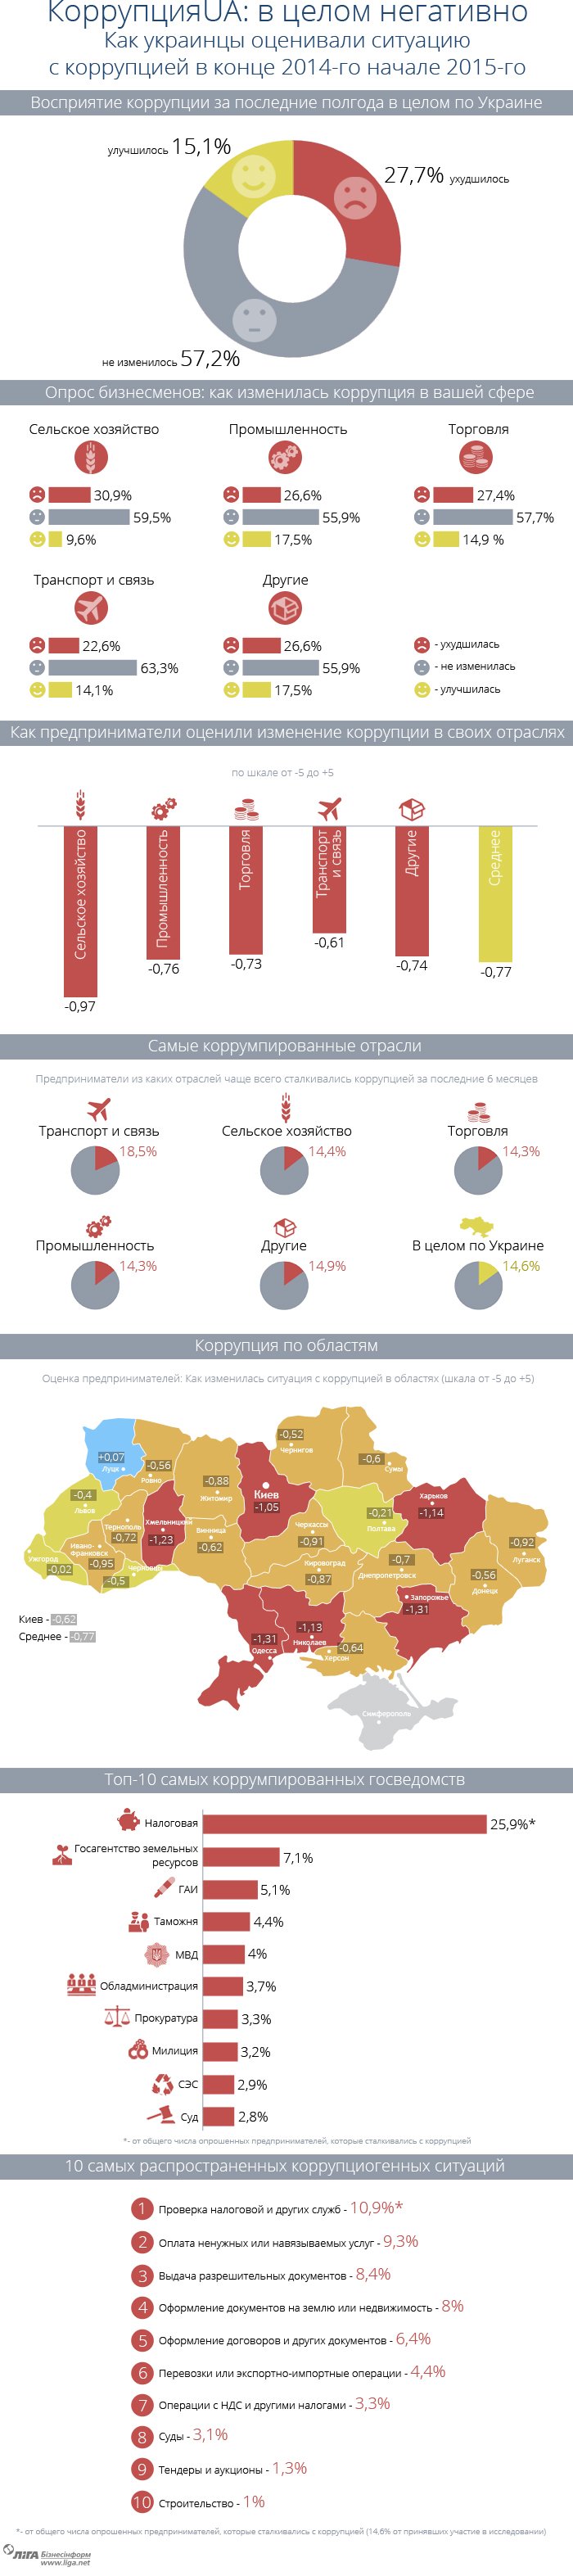 Антикоррупционный провал в Украине: бизнес не заметили уменьшения взяток. ИНФОГРАФИКА (фото) - фото 1